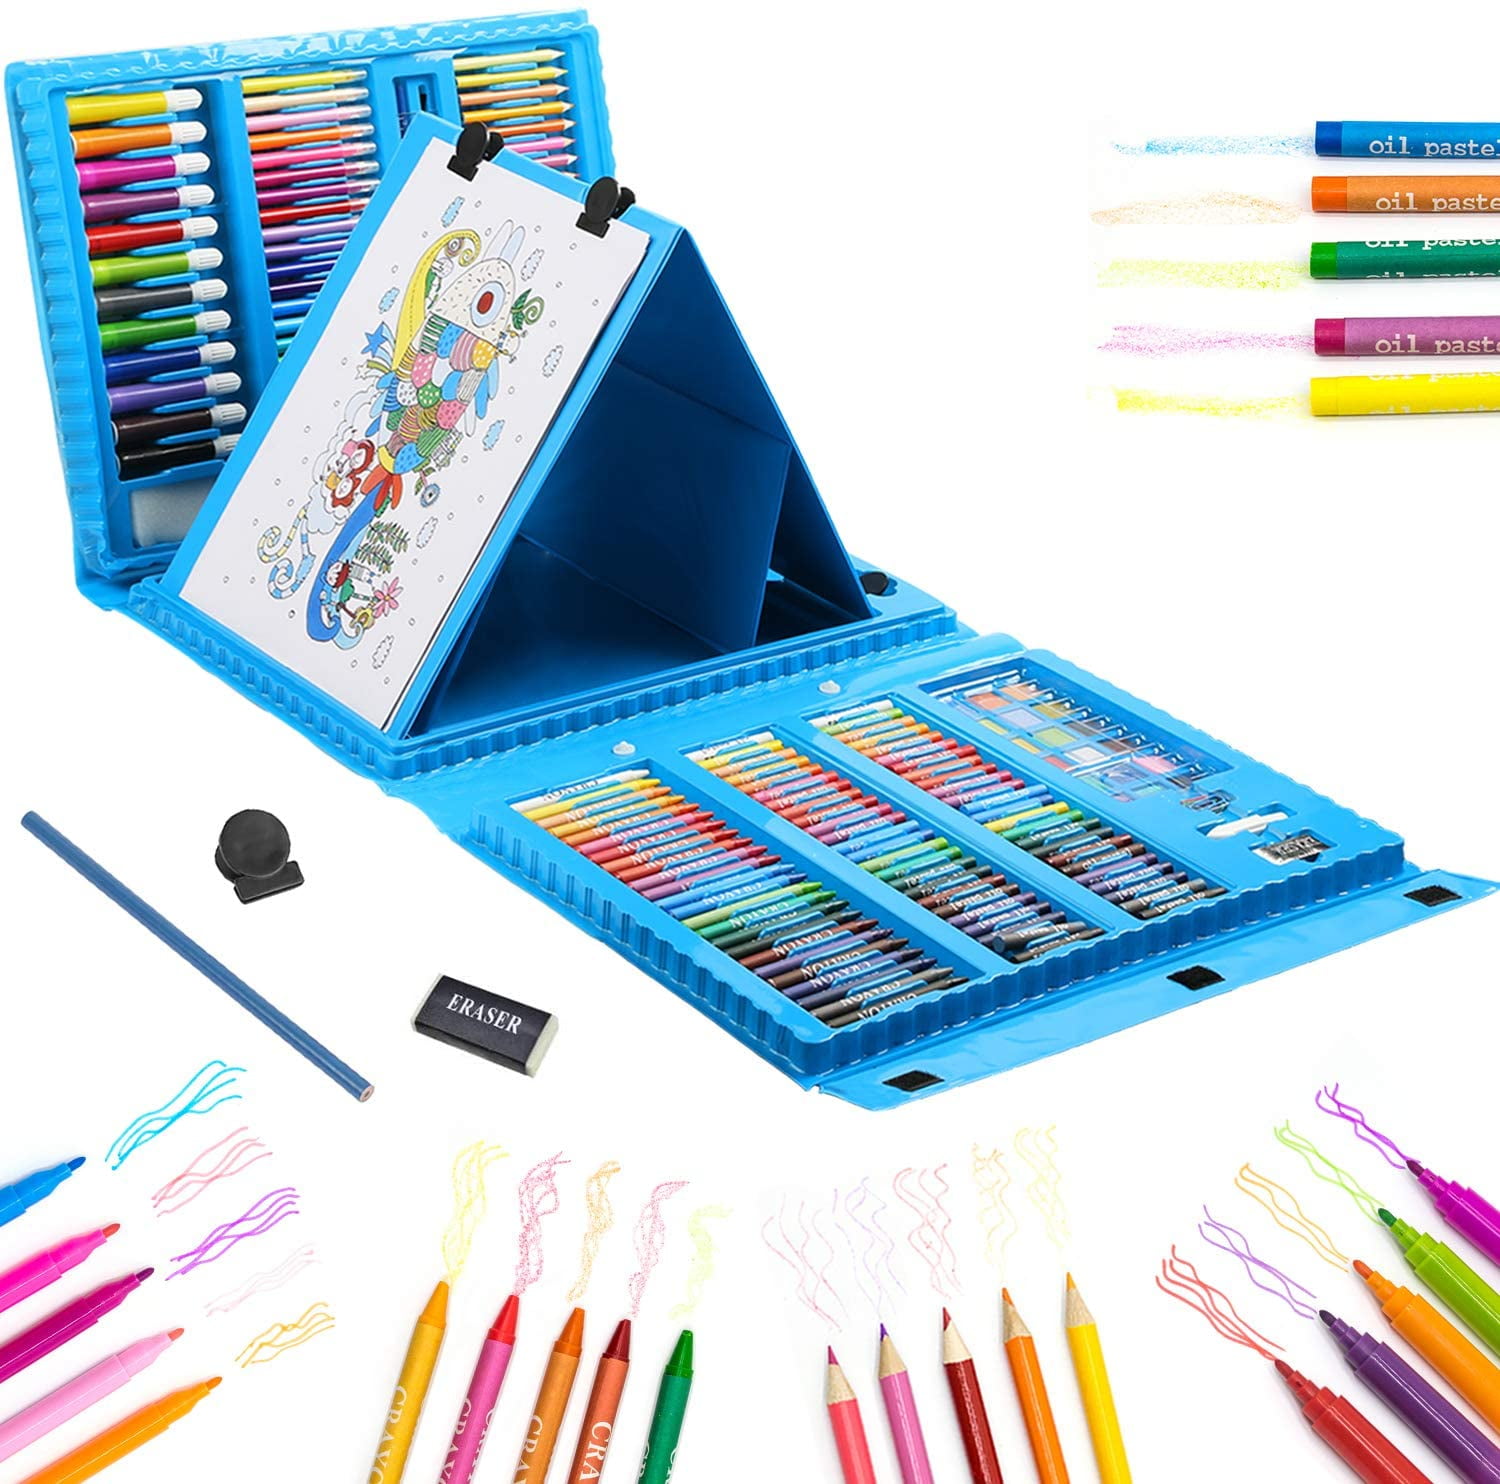 Details about   Kids Colouring Set Drawing Set 50-208PCS Art Case Pencils Painting Childrens